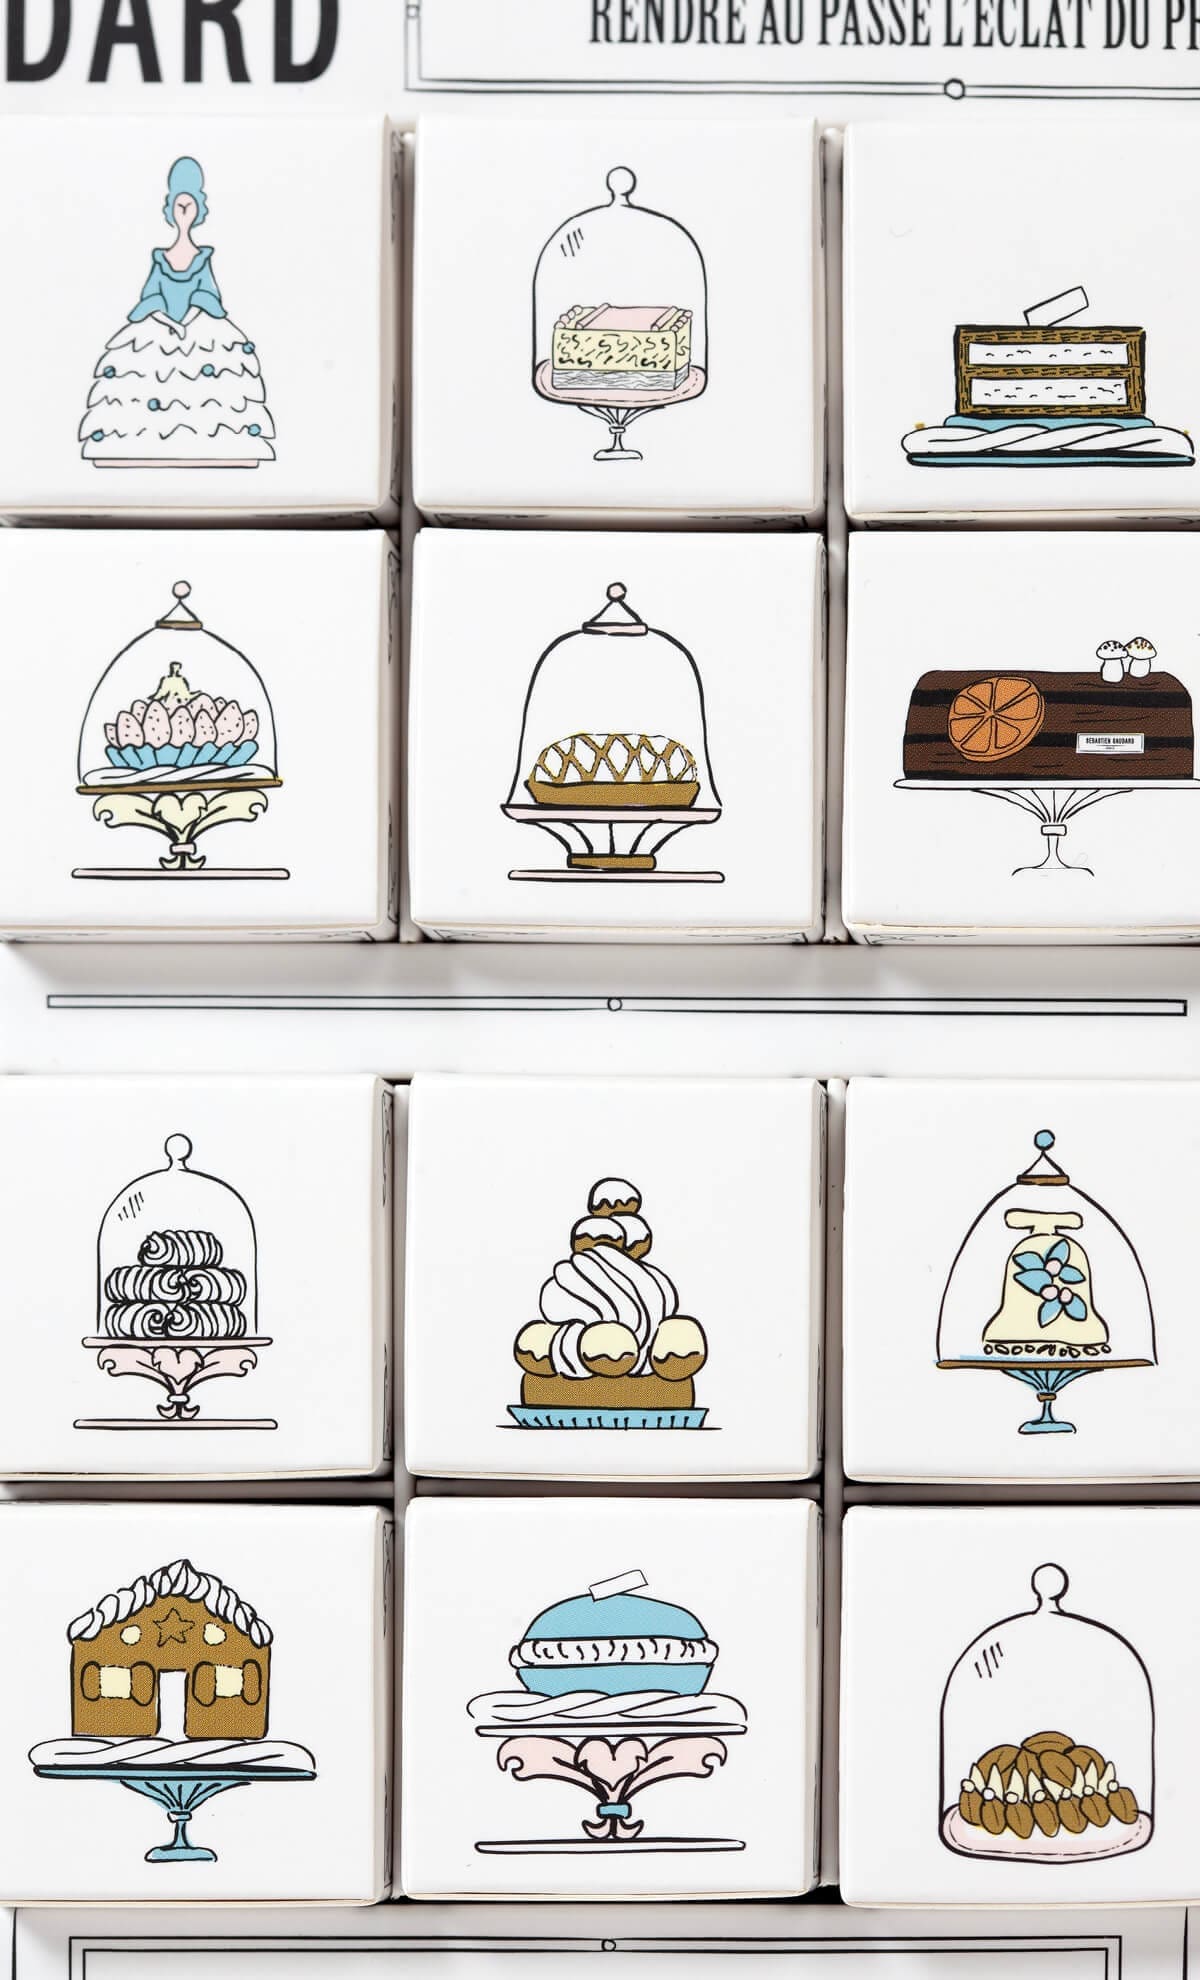 collection des patisseries de chef pâtissier sebastien gaudard sur les 24 cases du calendrier de lavent 2022 illustrations et design ichetkar